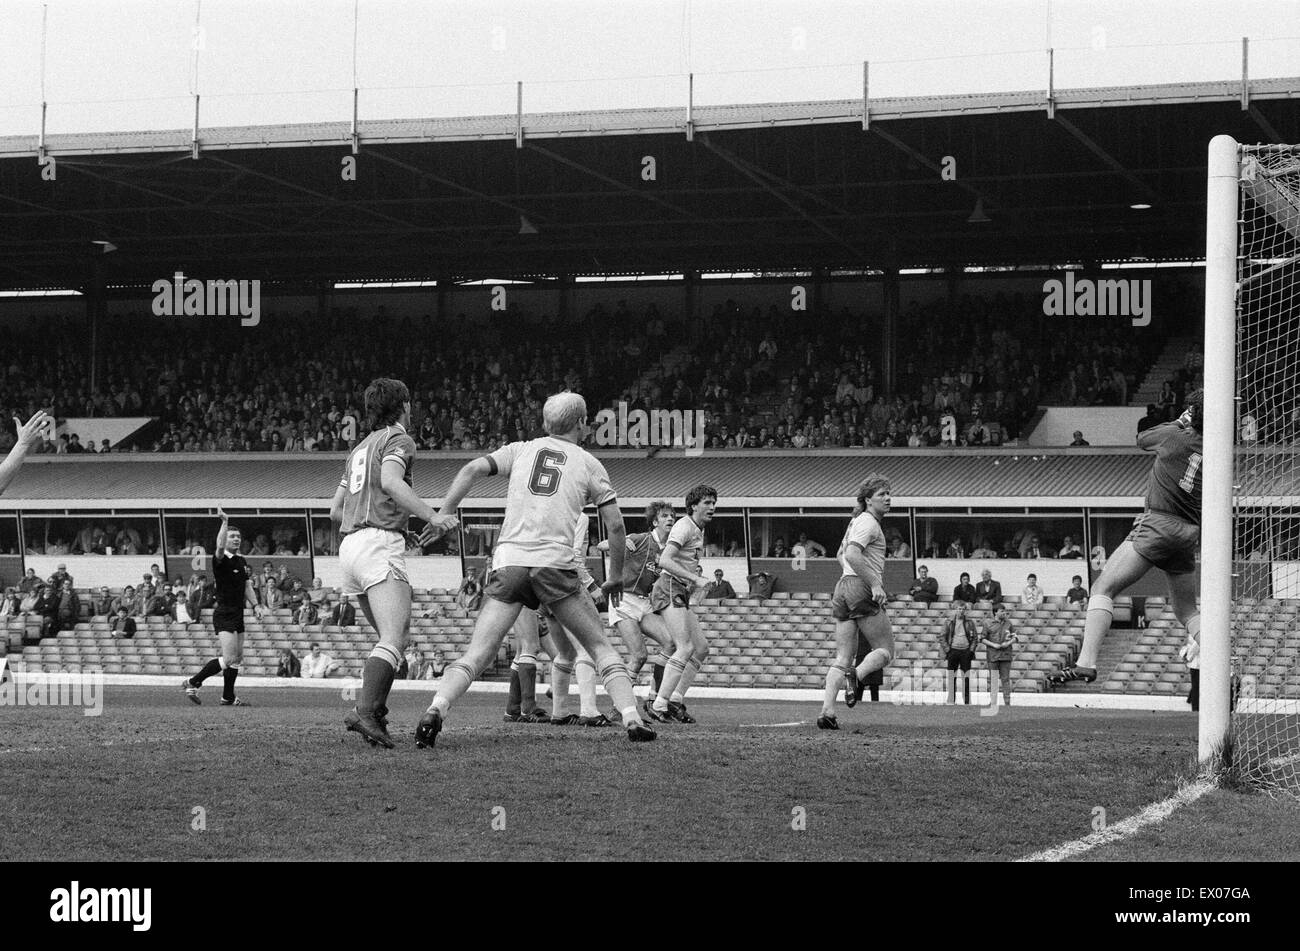 Birmingham 1-0 Leeds Division 2 Spiel, ausgetragen im St. Andrews Stadium. Gewalttätige Szenen am Ende nach Fans strömten auf den Platz. 11. Mai 1985. Stockfoto